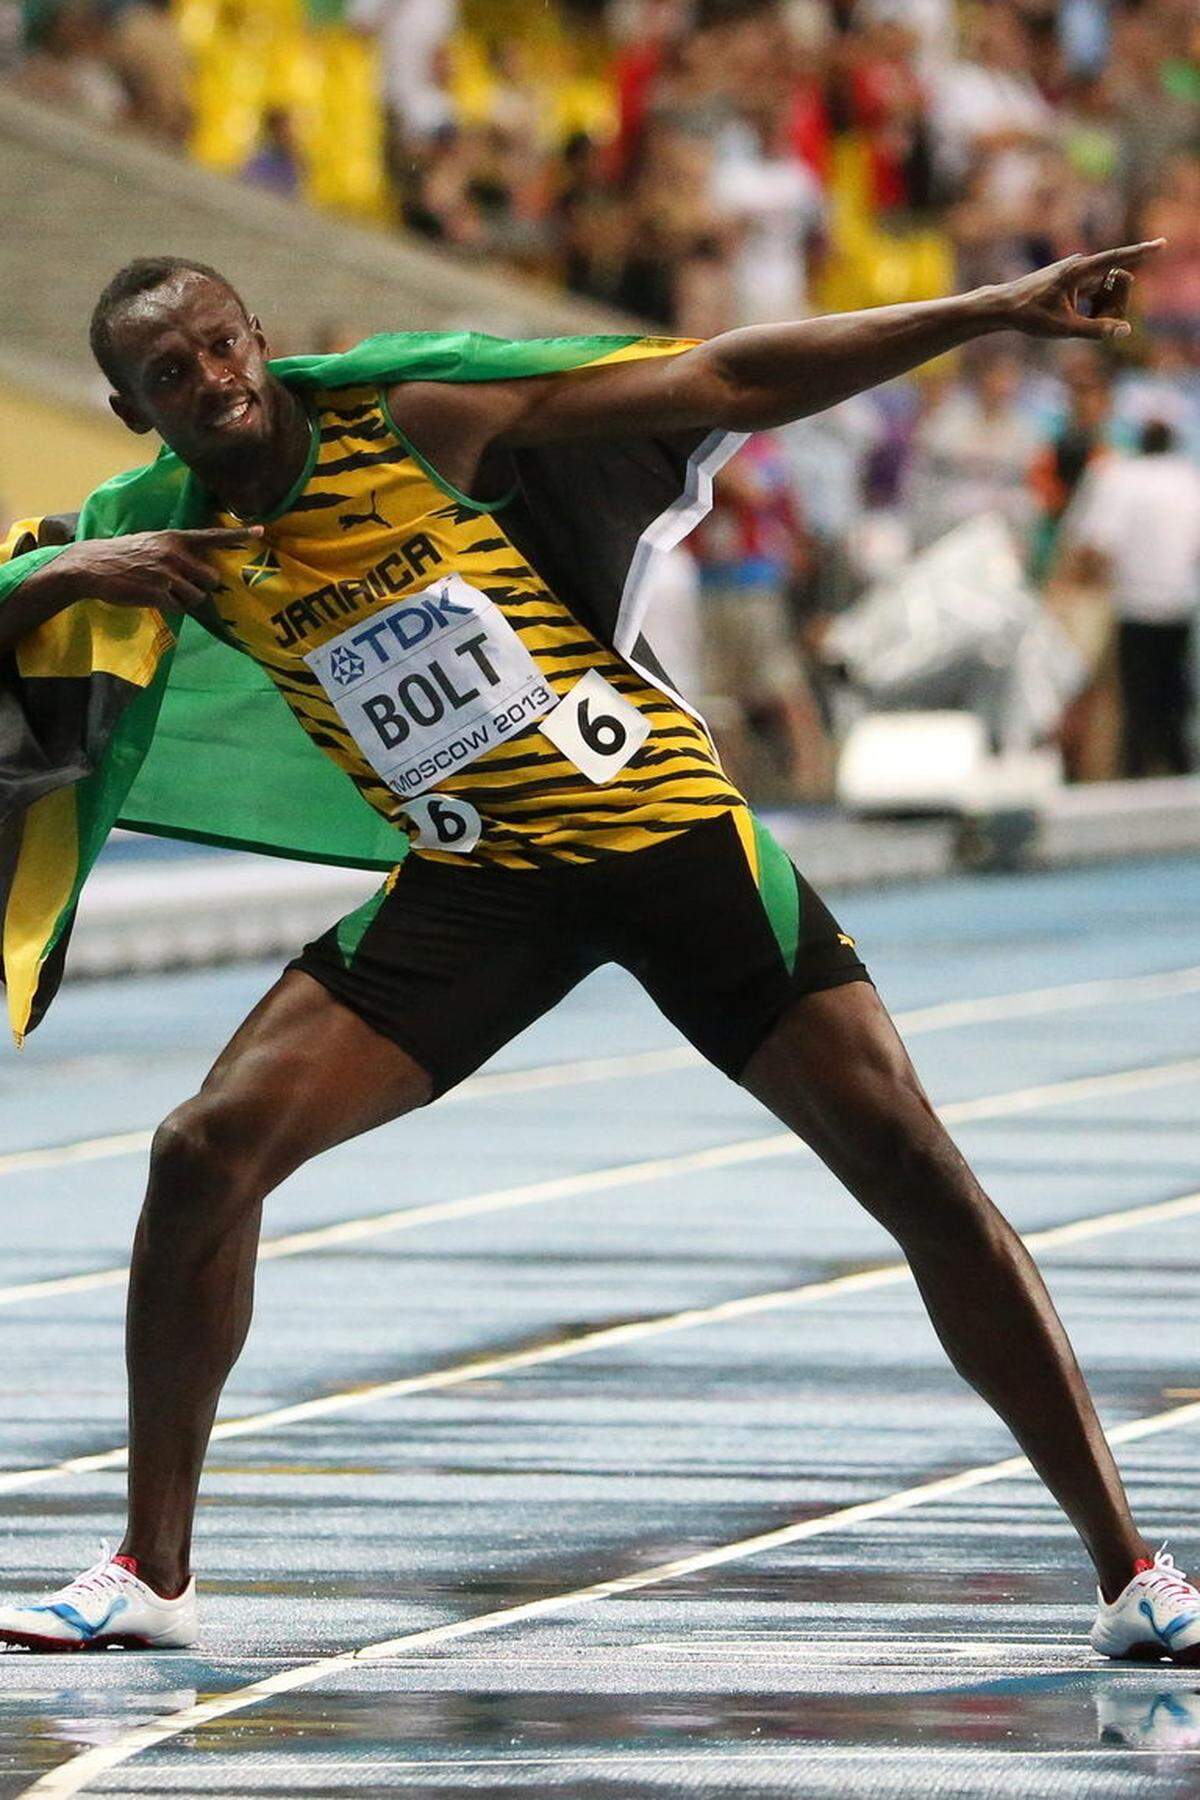 Usain Bolt läuft im Finale über die 100 Meter mit 9,77 Sekunden Sekunden souverän zu Gold. Silber holt Justin Gatlin aus den USA in 9,85 Sek., der beim Diamond-League-Meeting in Rom Bolt die einzige Niederlage in diesem Jahr zugefügt hatte, Bronze geht an Nesta Carter, einem weiteren Jamaikaner, der in 9,95 Sek. ebenfalls unter zehn Sekunden bleibt. Bei Blitz und Donner holt sich der Superstar den WM-Titel über die kurze Sprintstrecke zurück. Weltrekordinhaber Bolt hat damit seine Scharte aus Daegu 2011, wo er wegen eines Fehlstarts disqualifiziert wurde, ausgemerzt.